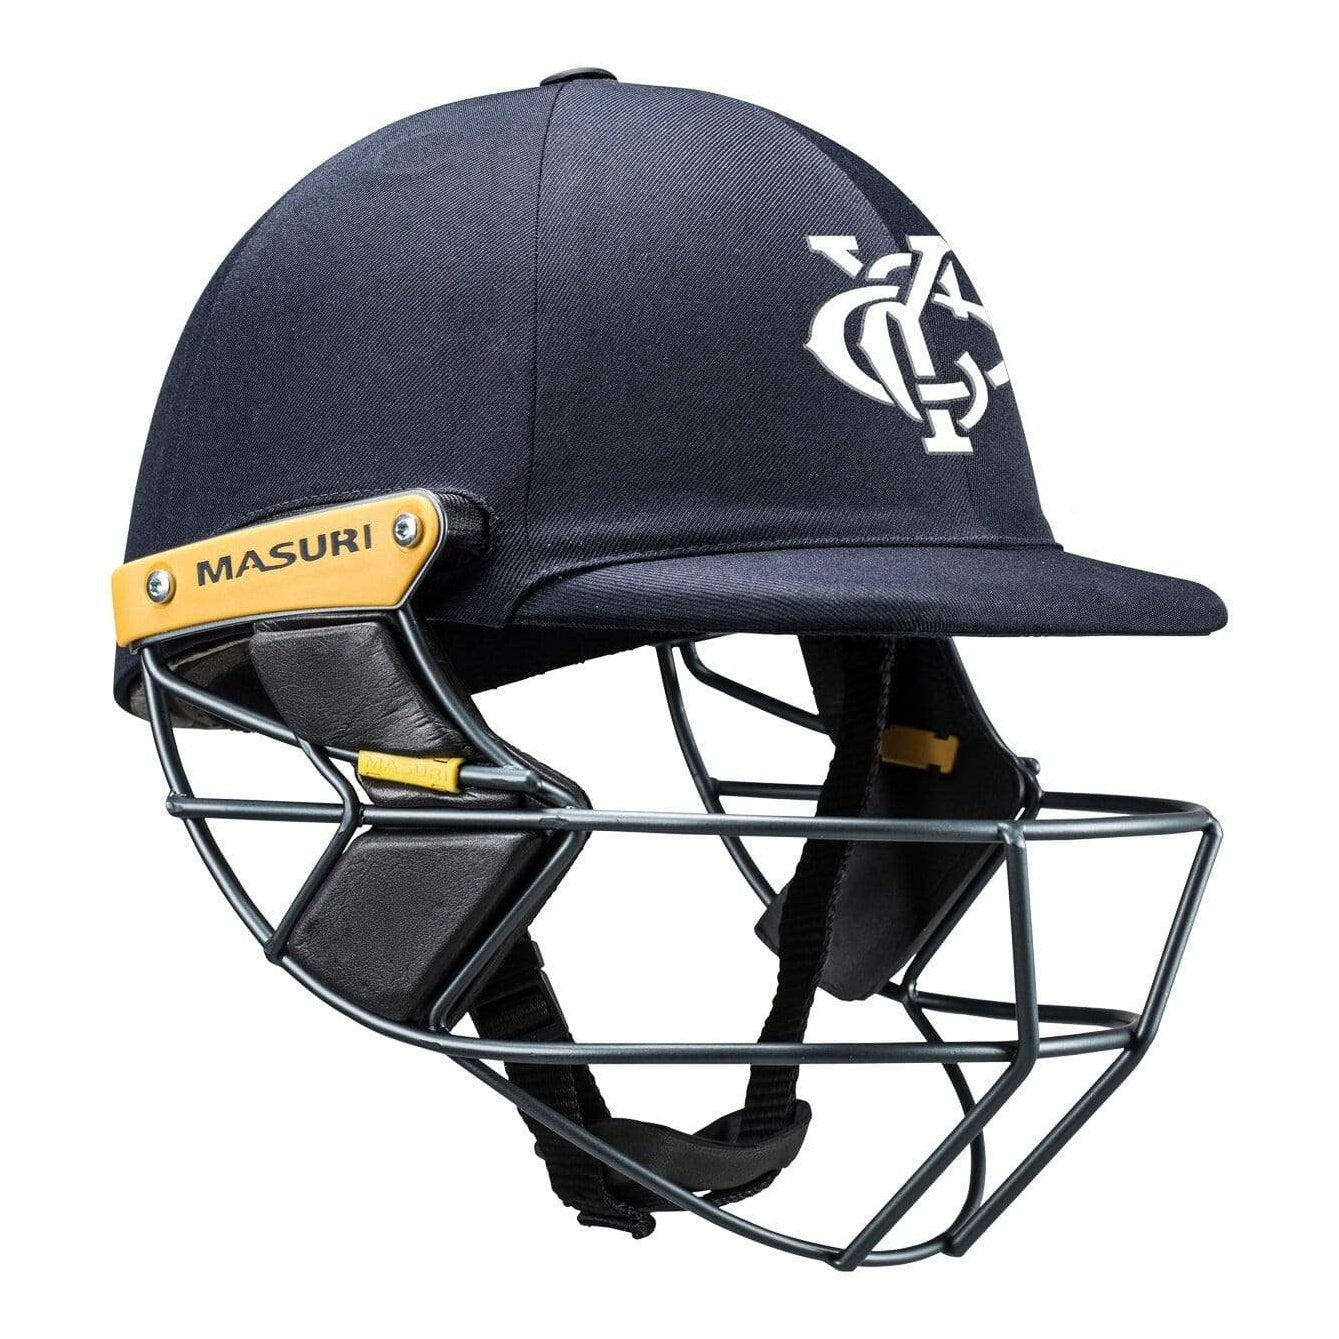 Masuri Club Helmet Yarraville Cricket Club Helmet